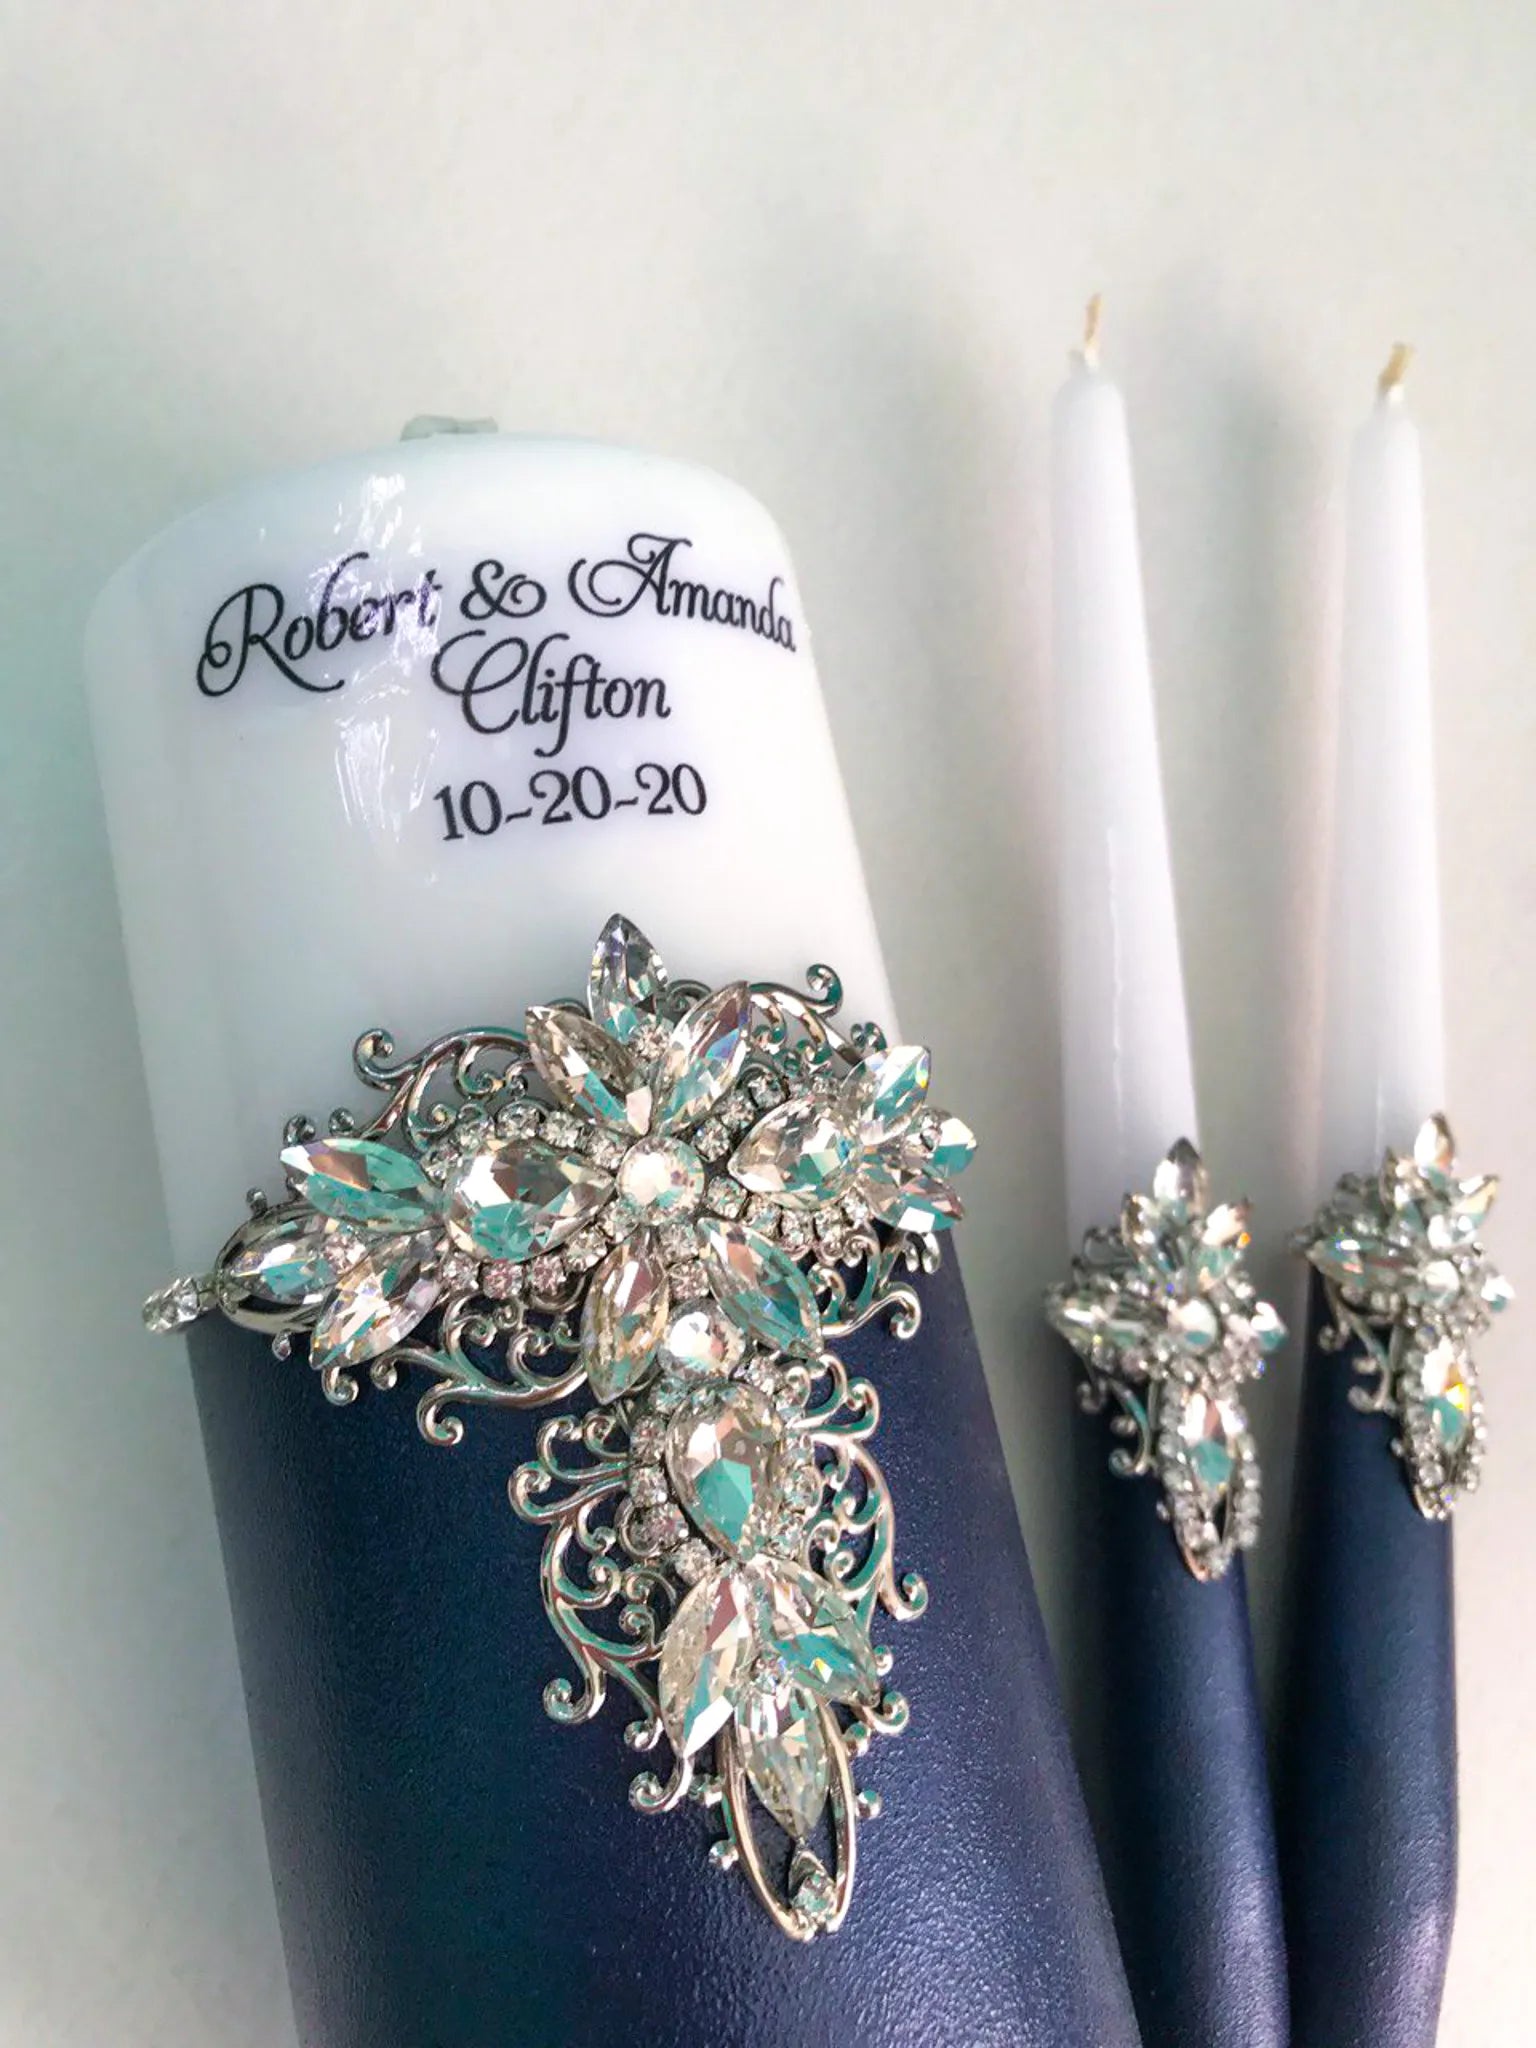 Elegant navy blue metallic unity candles